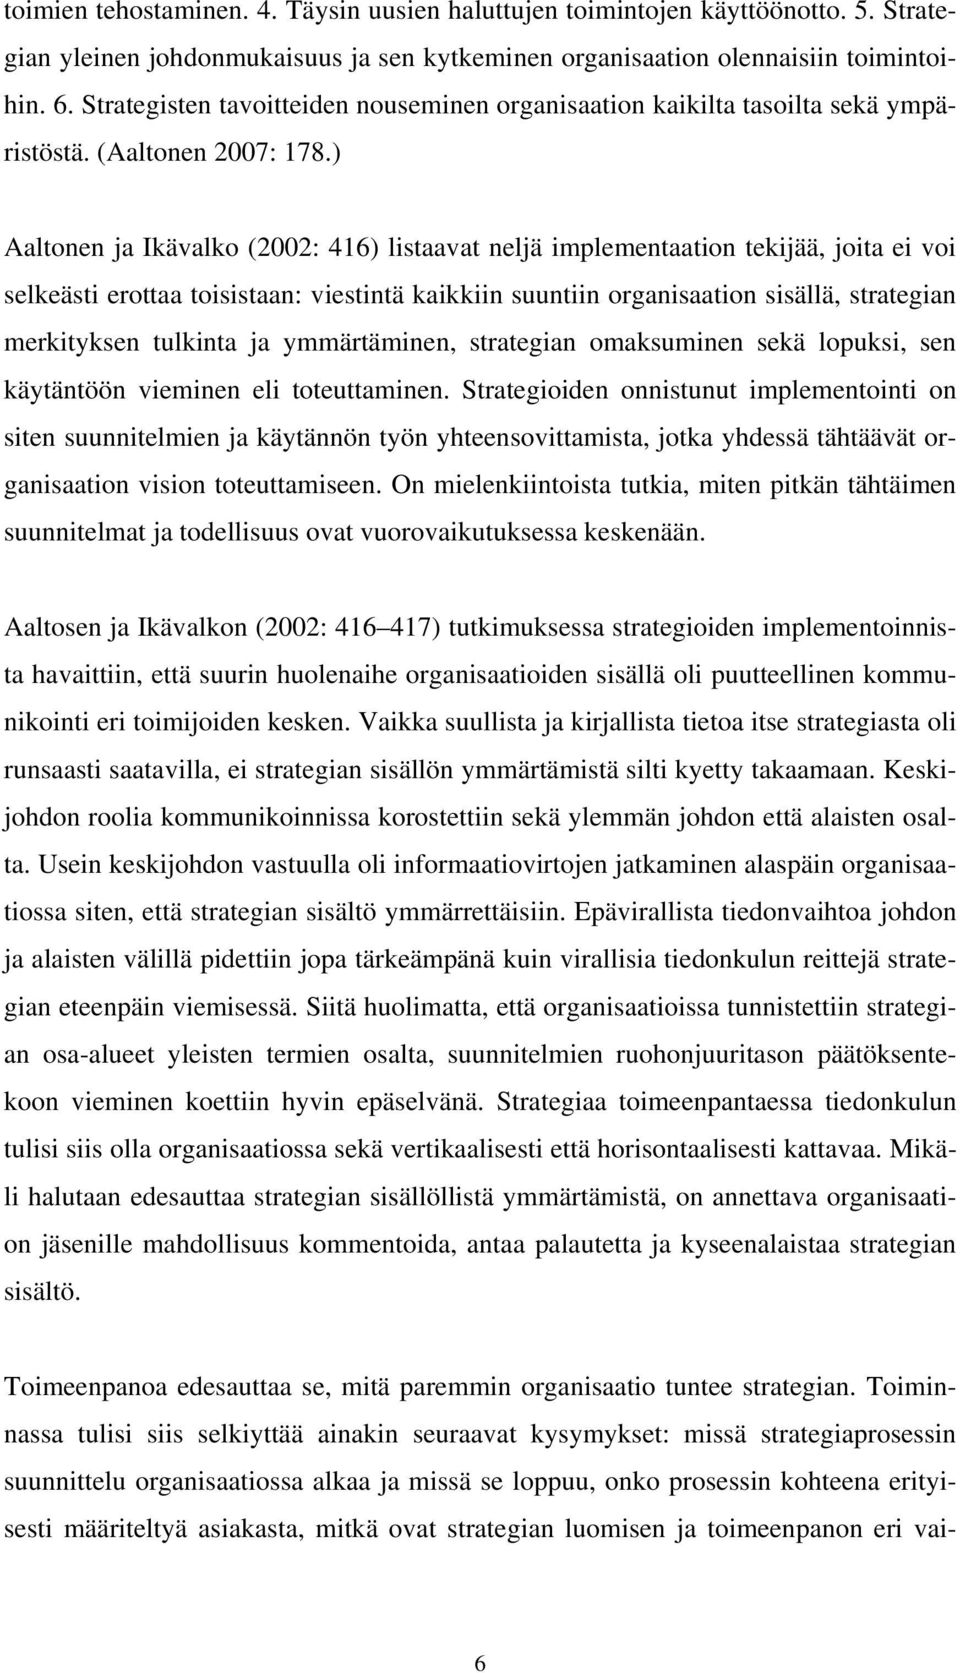 ) Aaltonen ja Ikävalko (2002: 416) listaavat neljä implementaation tekijää, joita ei voi selkeästi erottaa toisistaan: viestintä kaikkiin suuntiin organisaation sisällä, strategian merkityksen